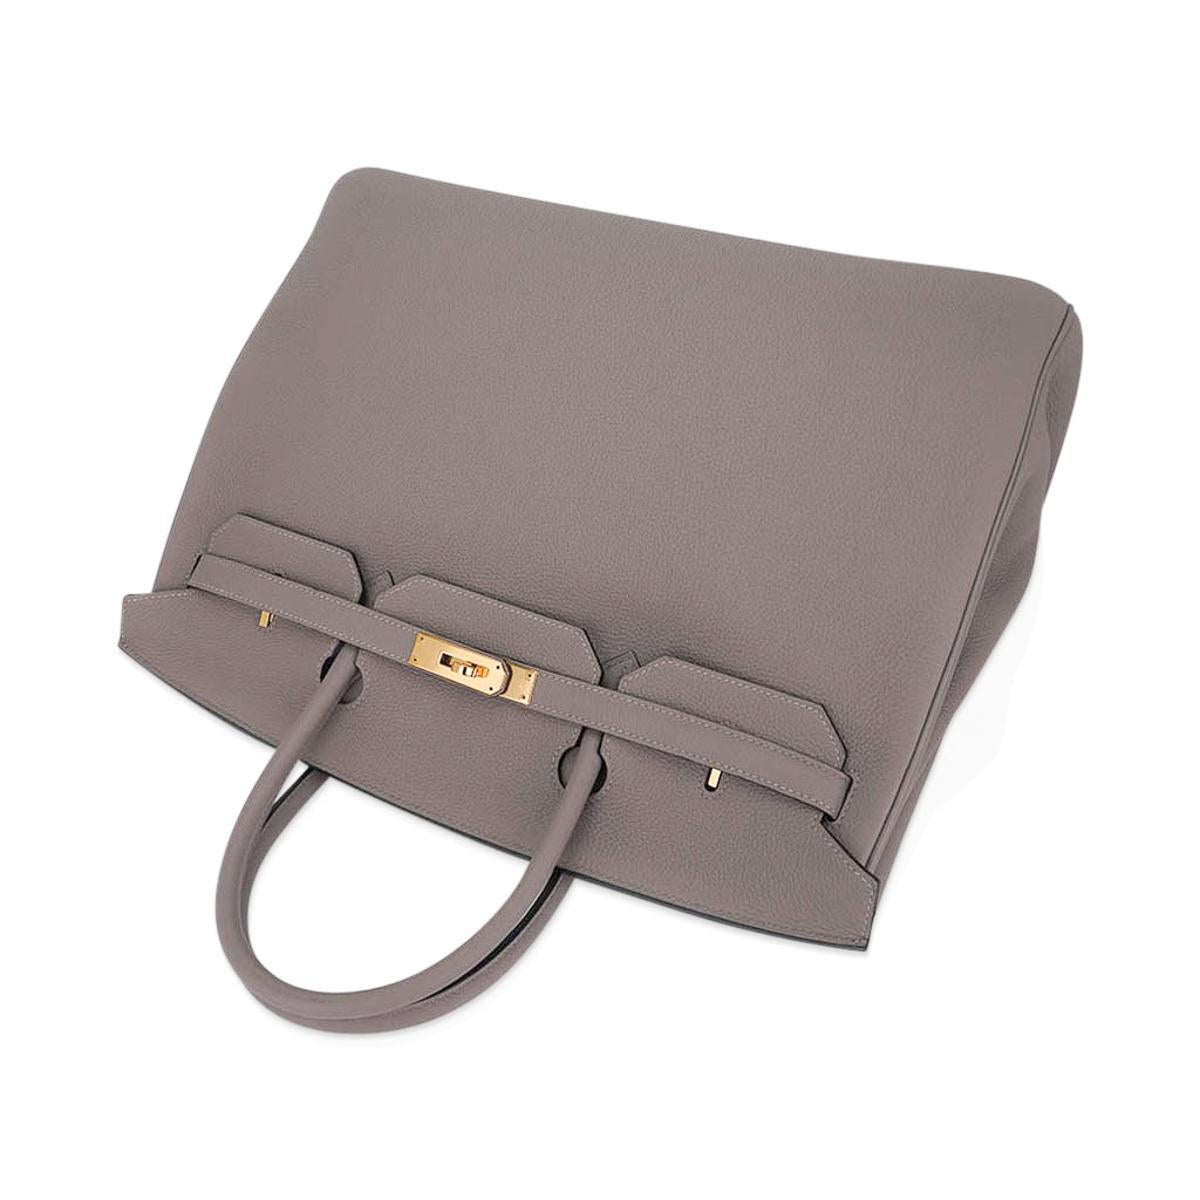 Hermes Birkin 35 Gris Asphalte Bag Gold Hardware Togo Leather 2